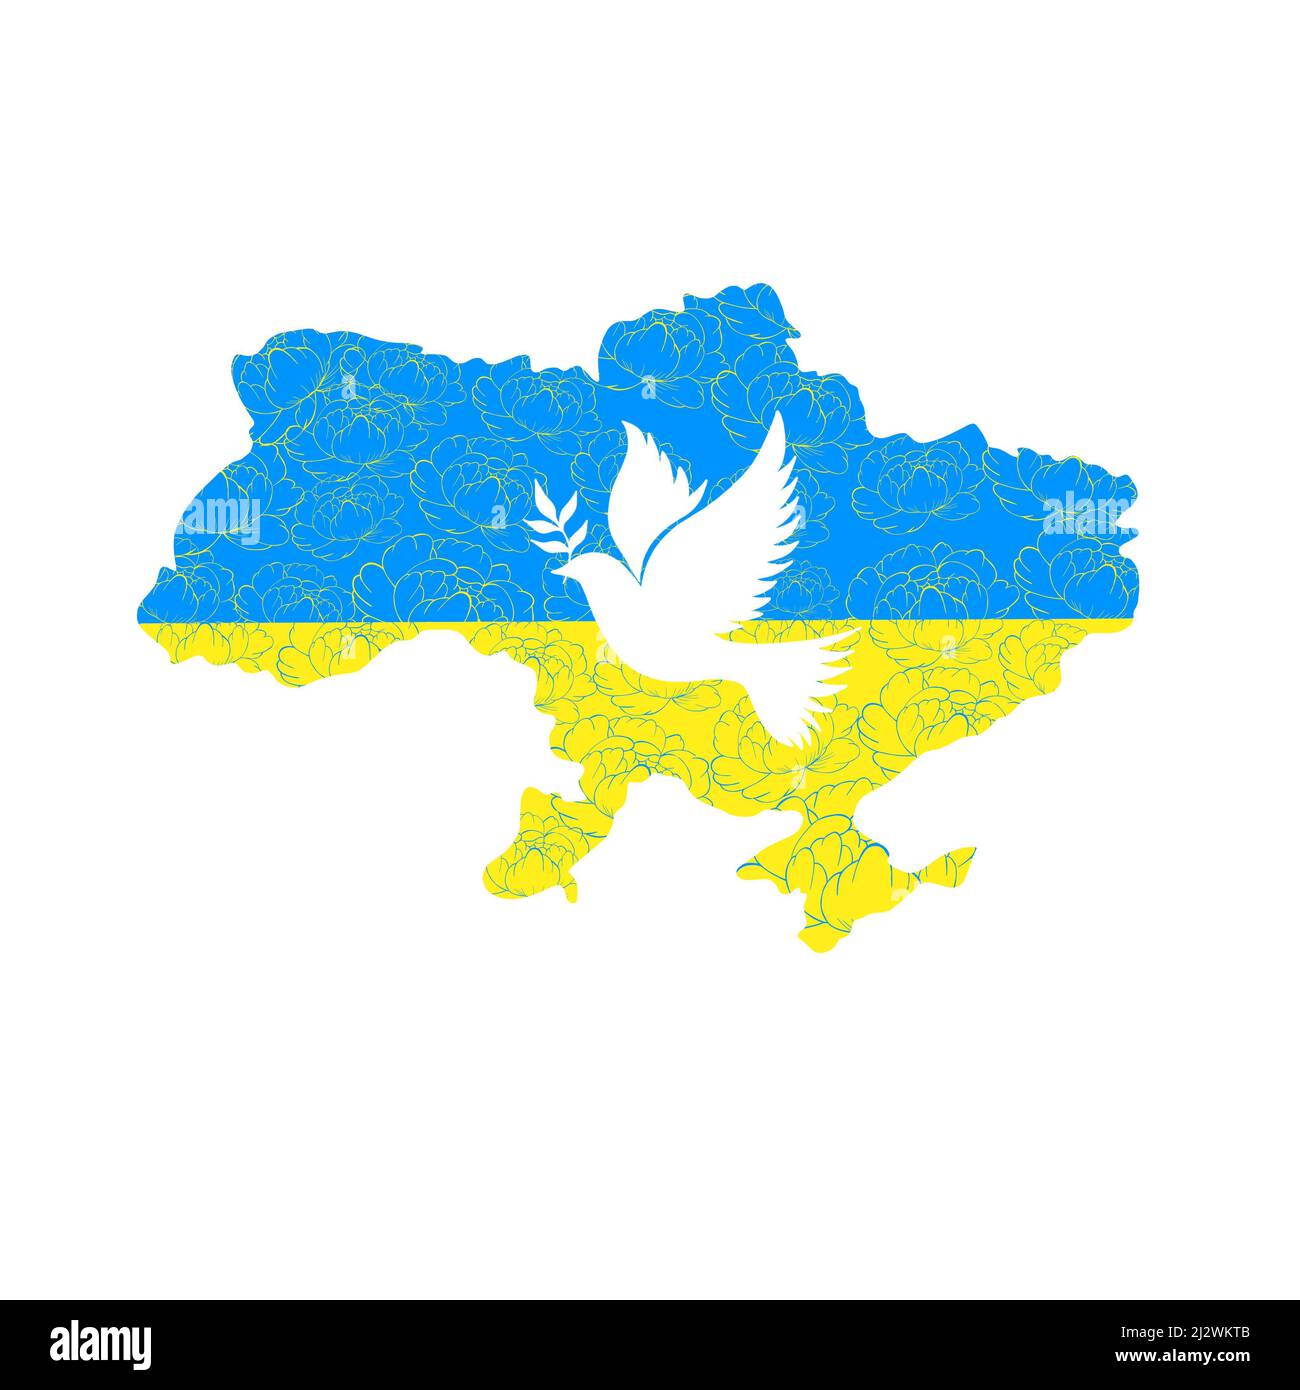 carte jaune-bleu de l'ukraine et des colombes de la paix. arrêter la guerre en ukraine Banque D'Images